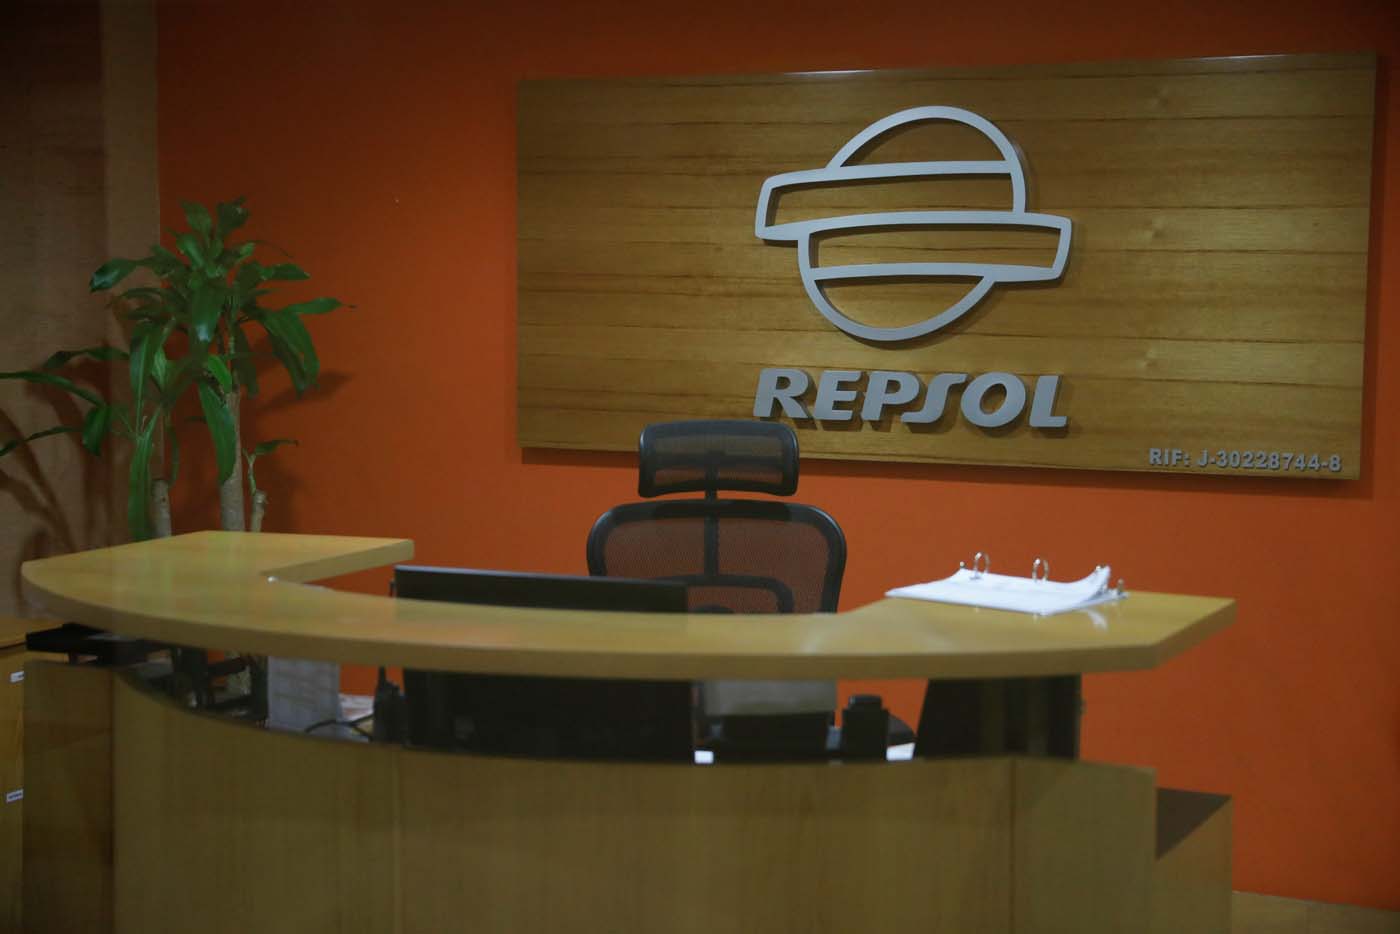 Repsol cesó sus actividades bajo régimen de sanciones en Venezuela, según EEUU